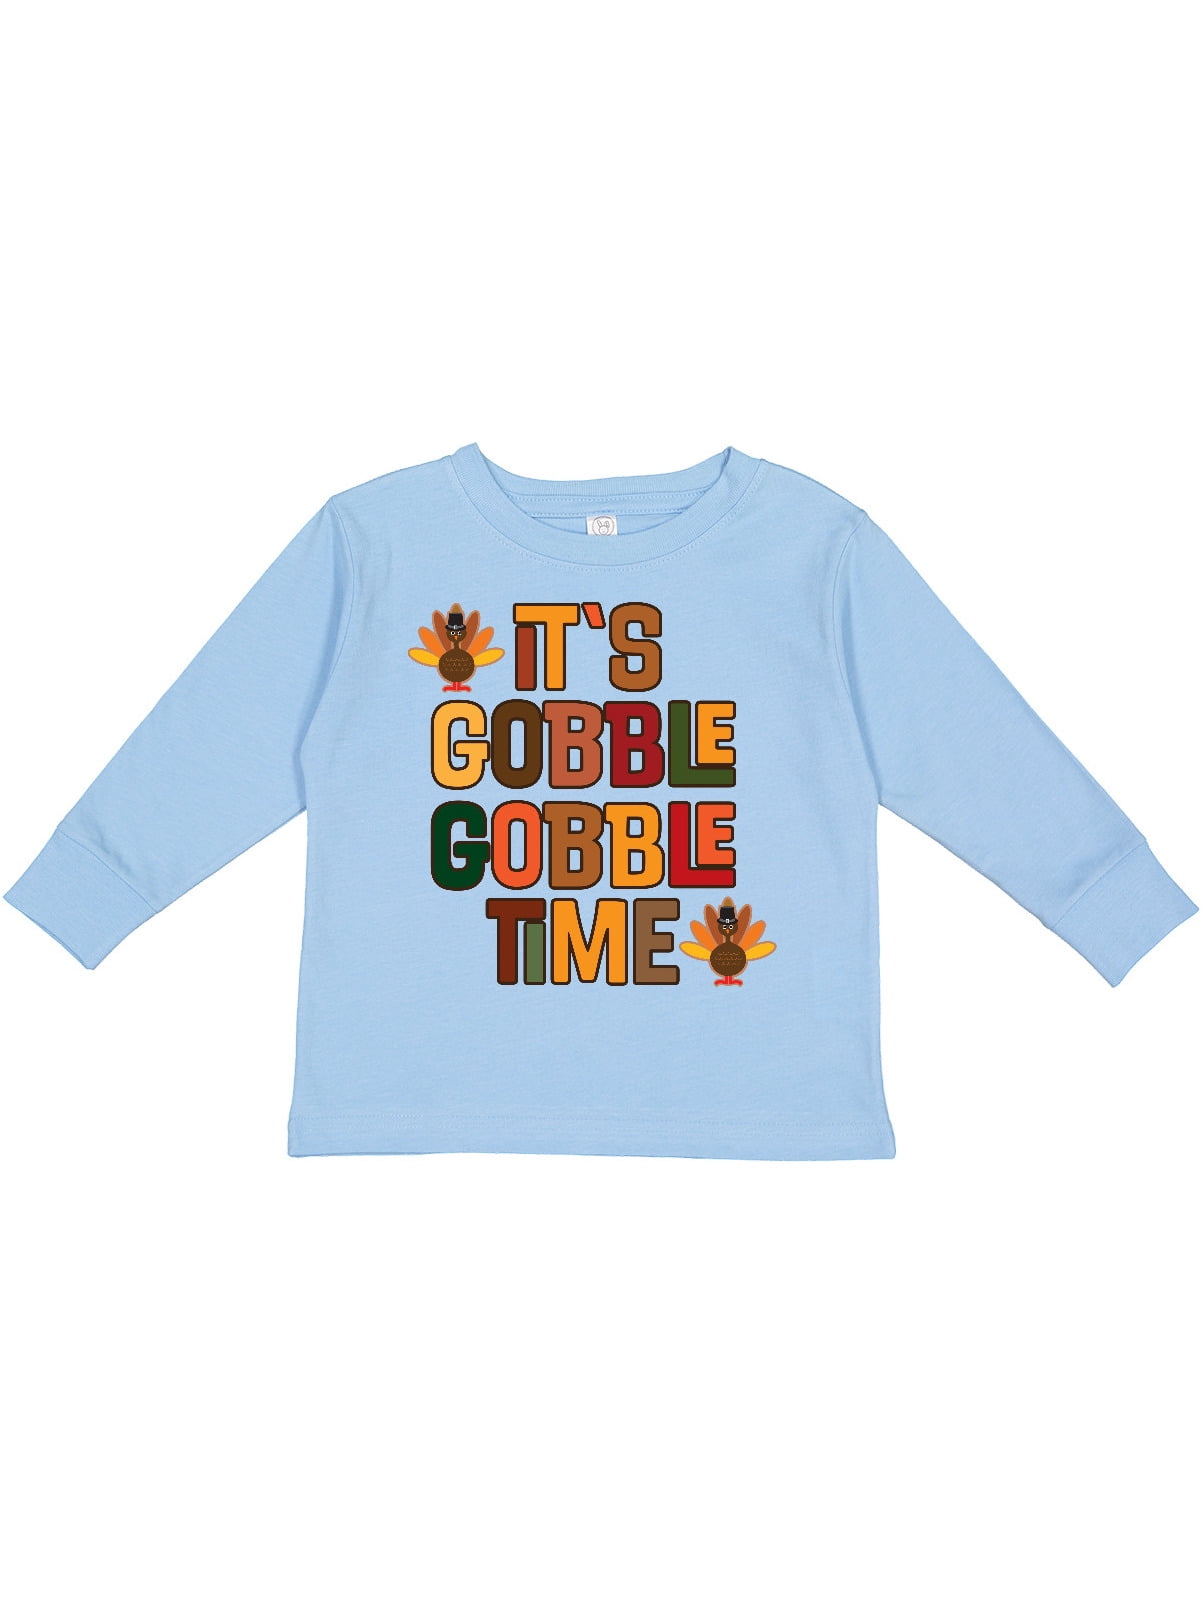 Turkey Gobble Gobble Shirt Thanksgiving Toddler Kids Long Sleeve Tshirt